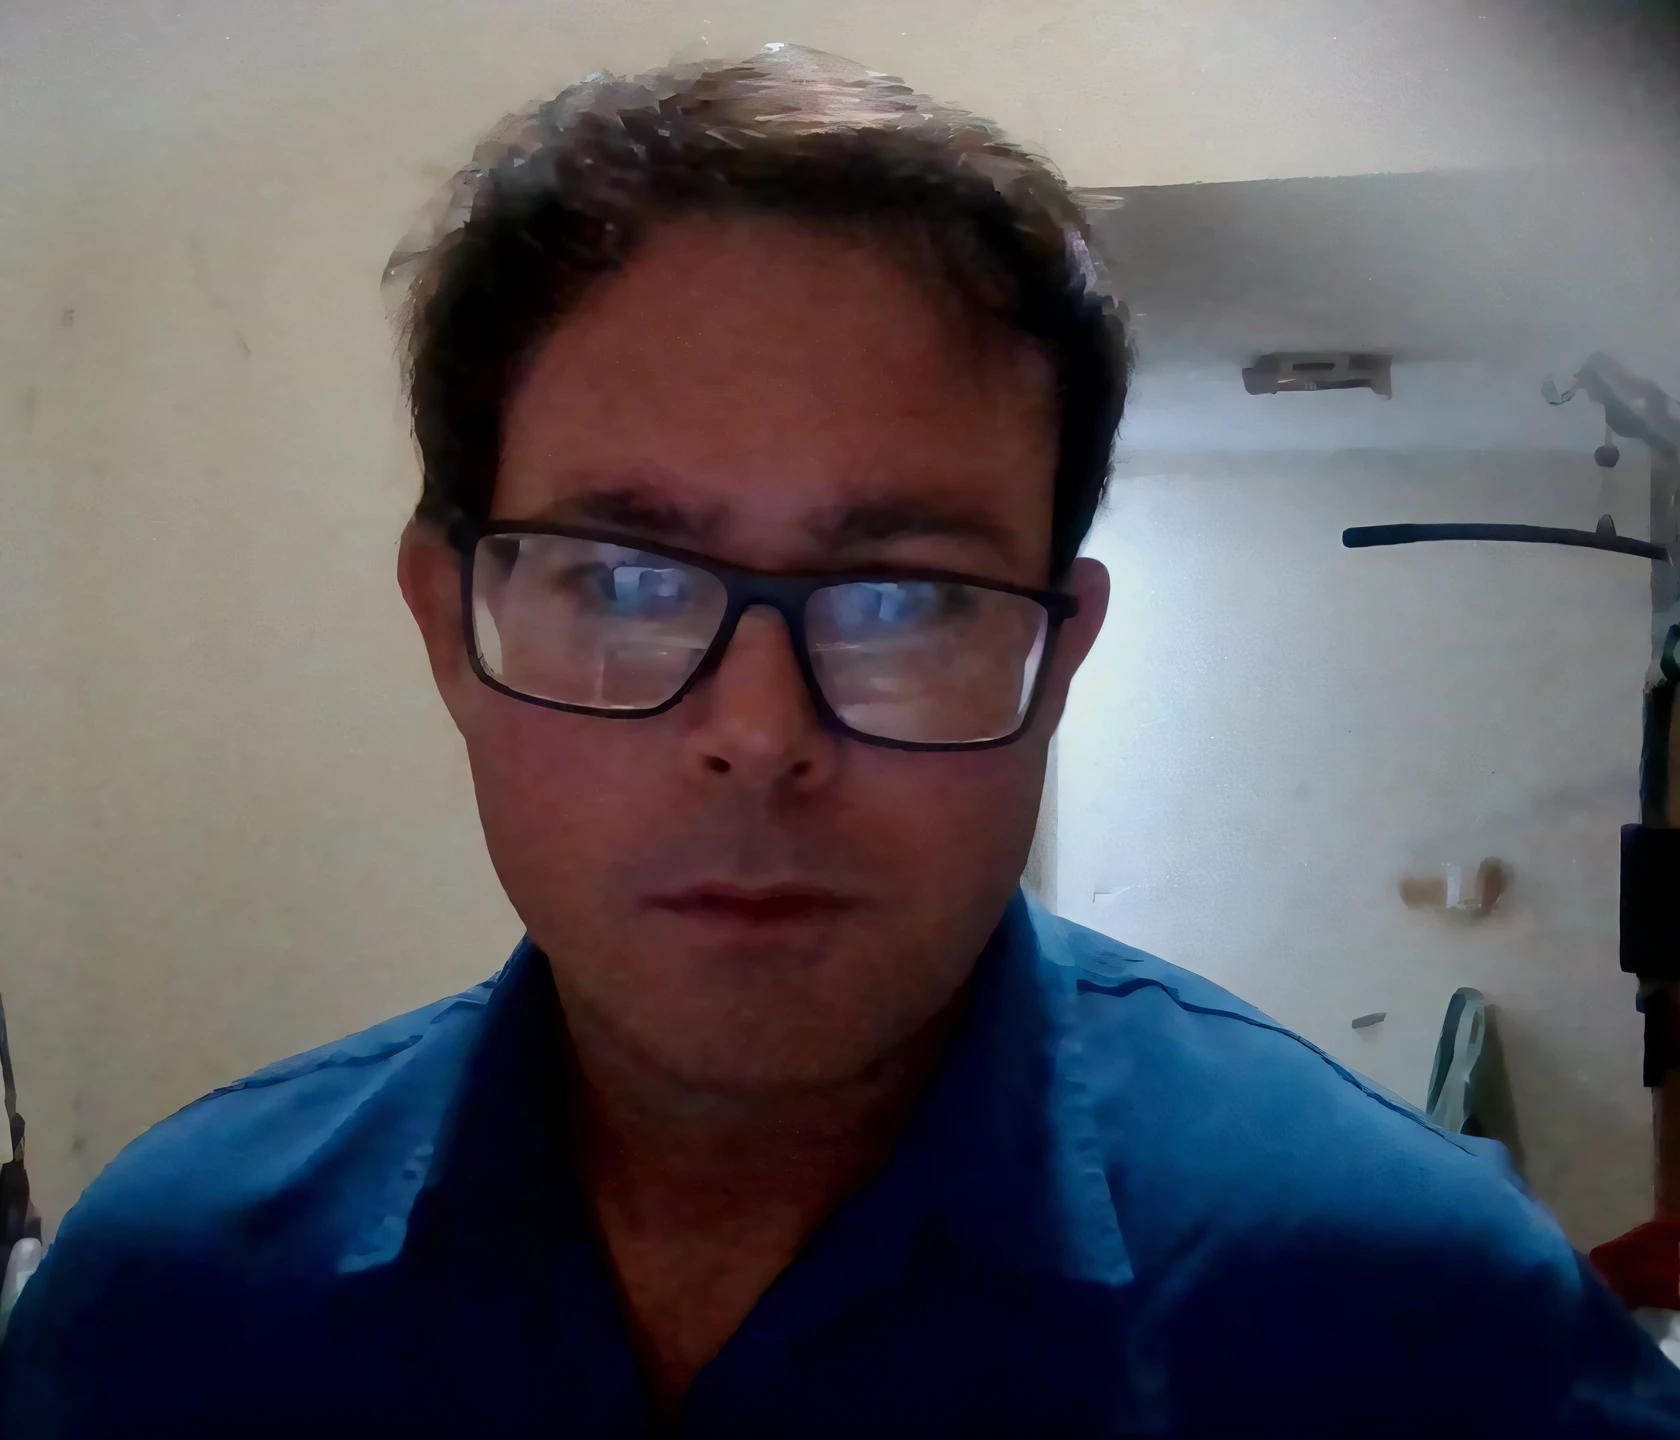 Da ist ein Mann mit Brille und blauem Hemd, ca. 3 5 Jahre alt, mit leichten Stoppeln, David Rios Ferreira, Icaro-Eiche, mit Streberbrille und Spitzbart, 4 0 Jahre alter Mann, mit Brille und Spitzbart, (38 Jahre alt), 8k-Selfie-Foto, Selfie eines Mannes, Mann mit Brille, 38 Jahre alt